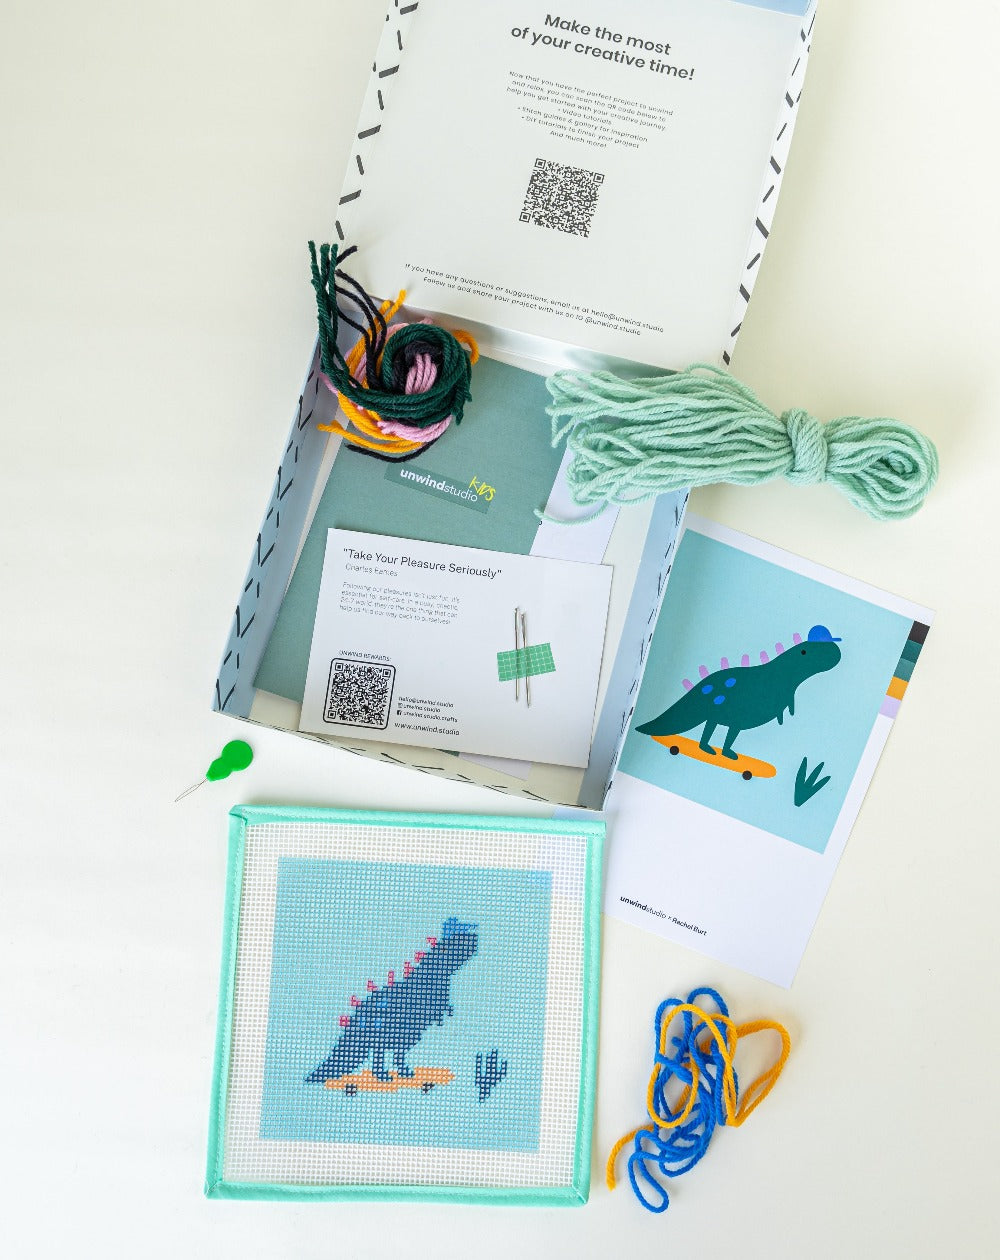 Dino The Skater - Needlepoint Kit for Kids - Complete Needlepoint Kit